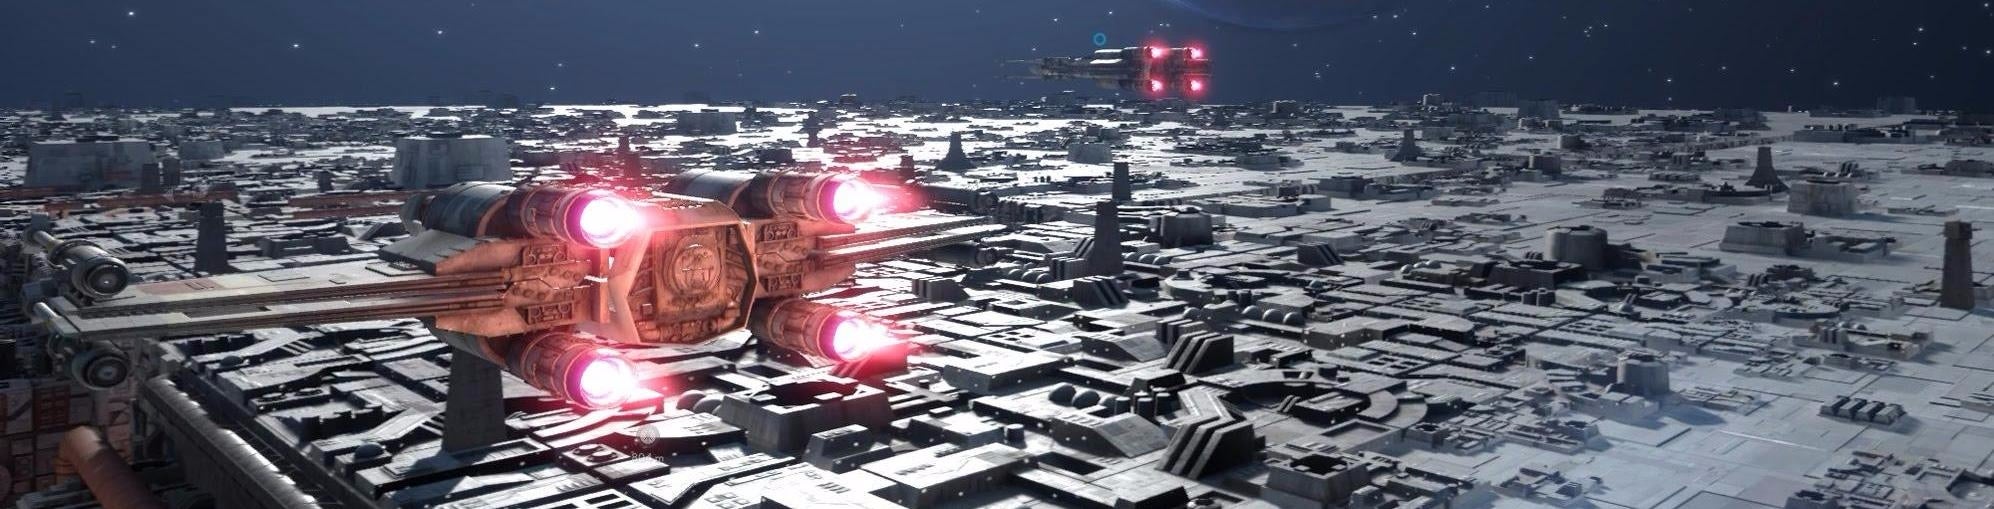 Image for How DICE's Star Wars Battlefront struck back